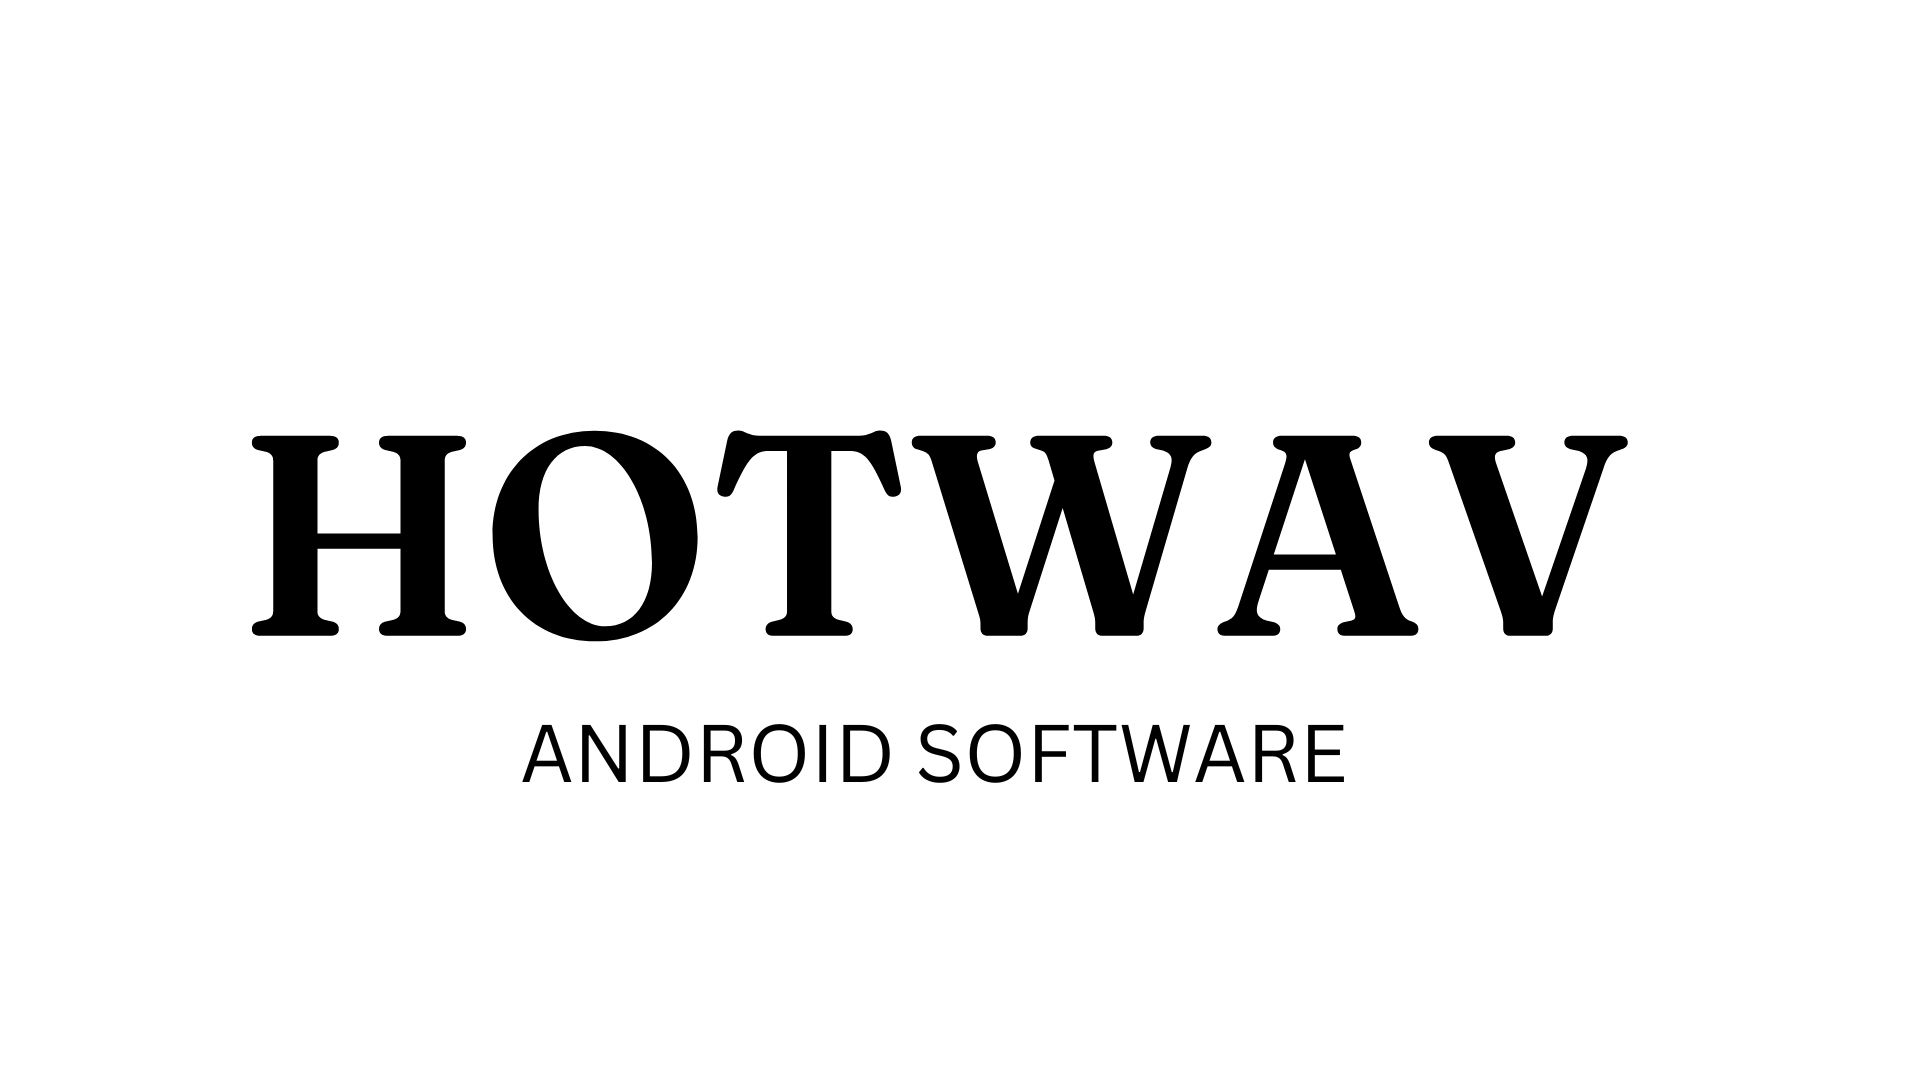 Hotwav IP7